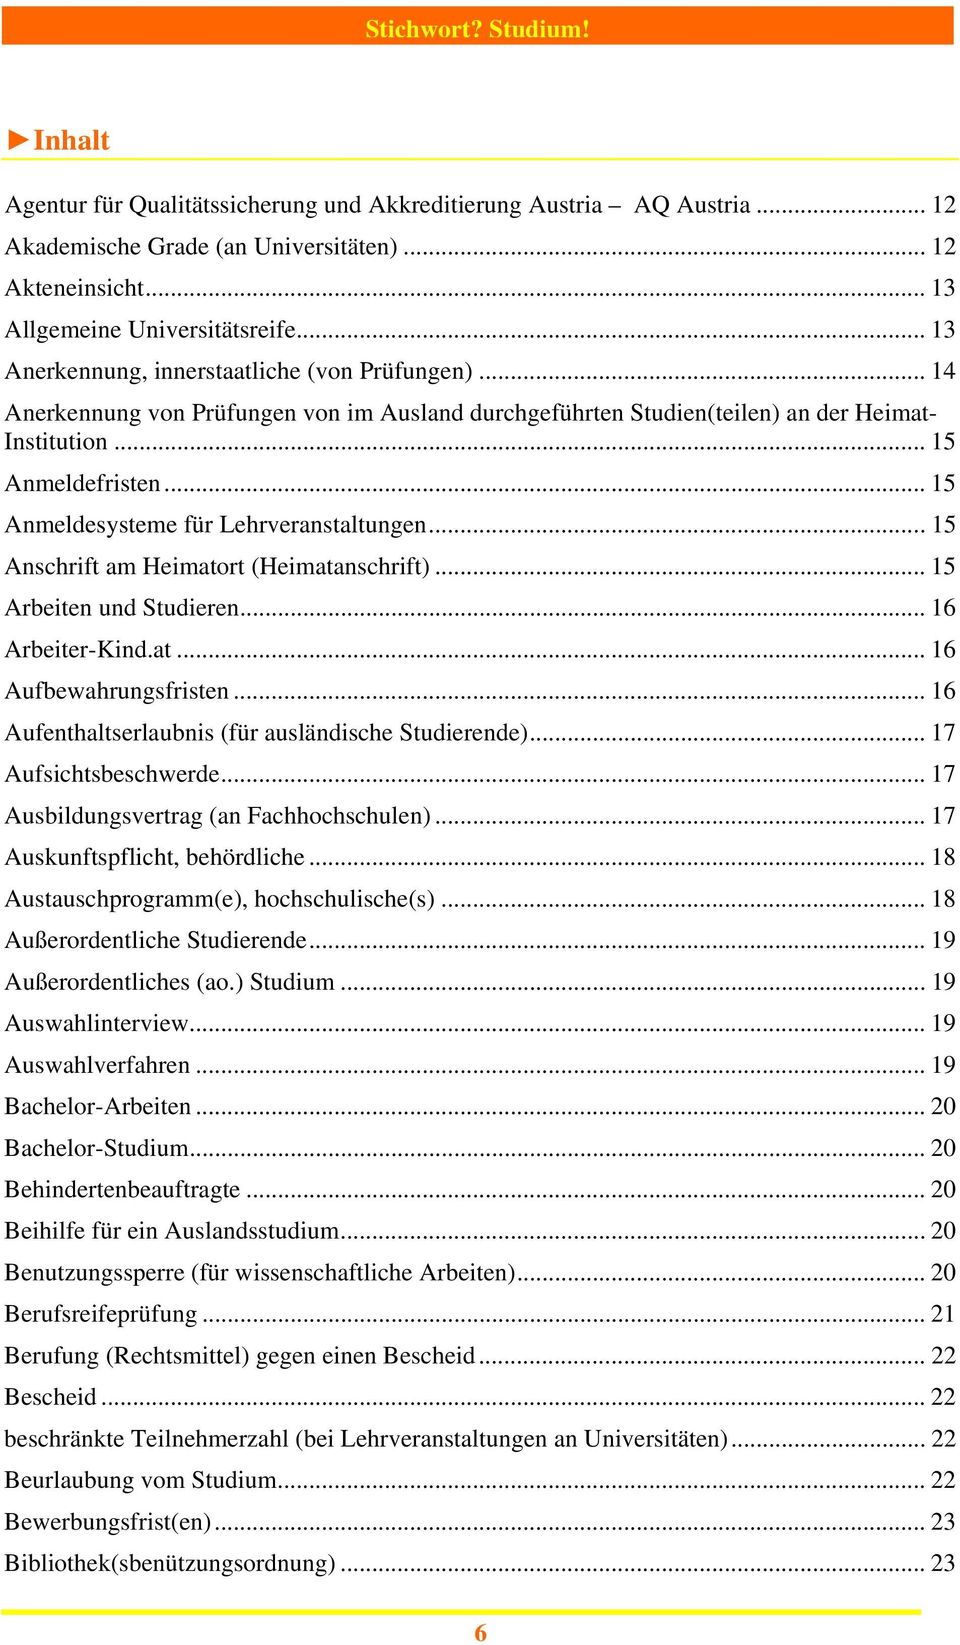 .. 15 Anmeldesysteme für Lehrveranstaltungen... 15 Anschrift am Heimatort (Heimatanschrift)... 15 Arbeiten und Studieren... 16 Arbeiter-Kind.at... 16 Aufbewahrungsfristen.